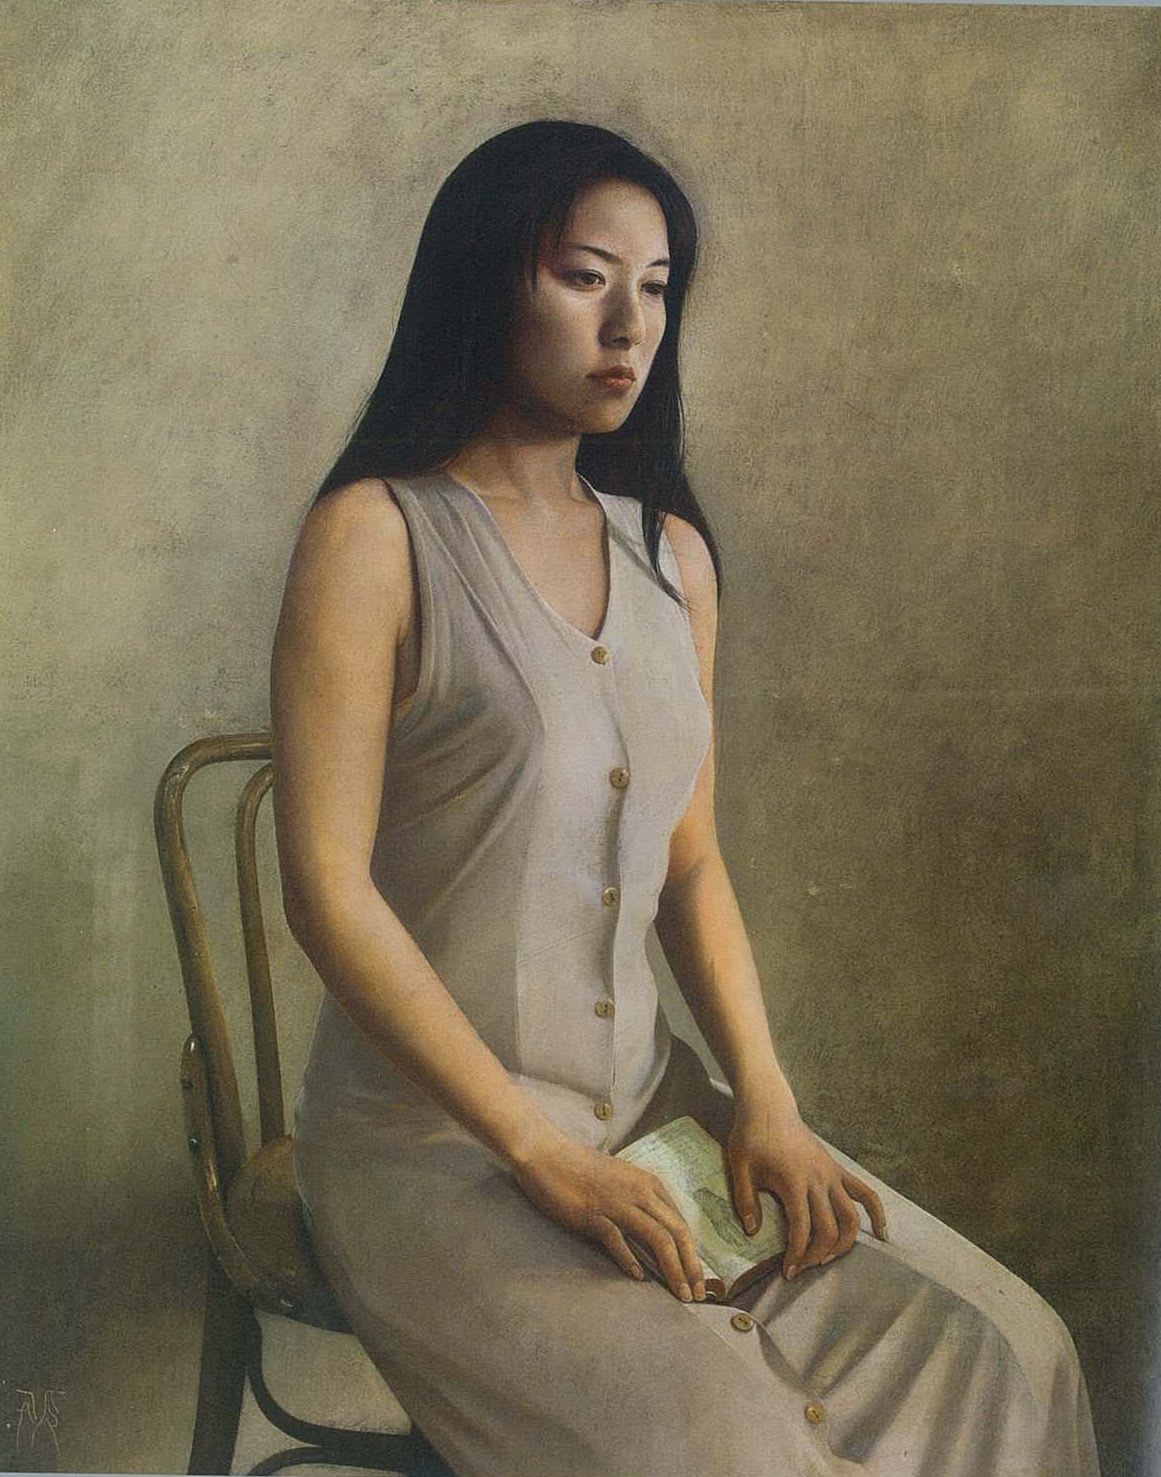 Atsushi Suwa 諏訪敦, Untitled 《無題》, 2002